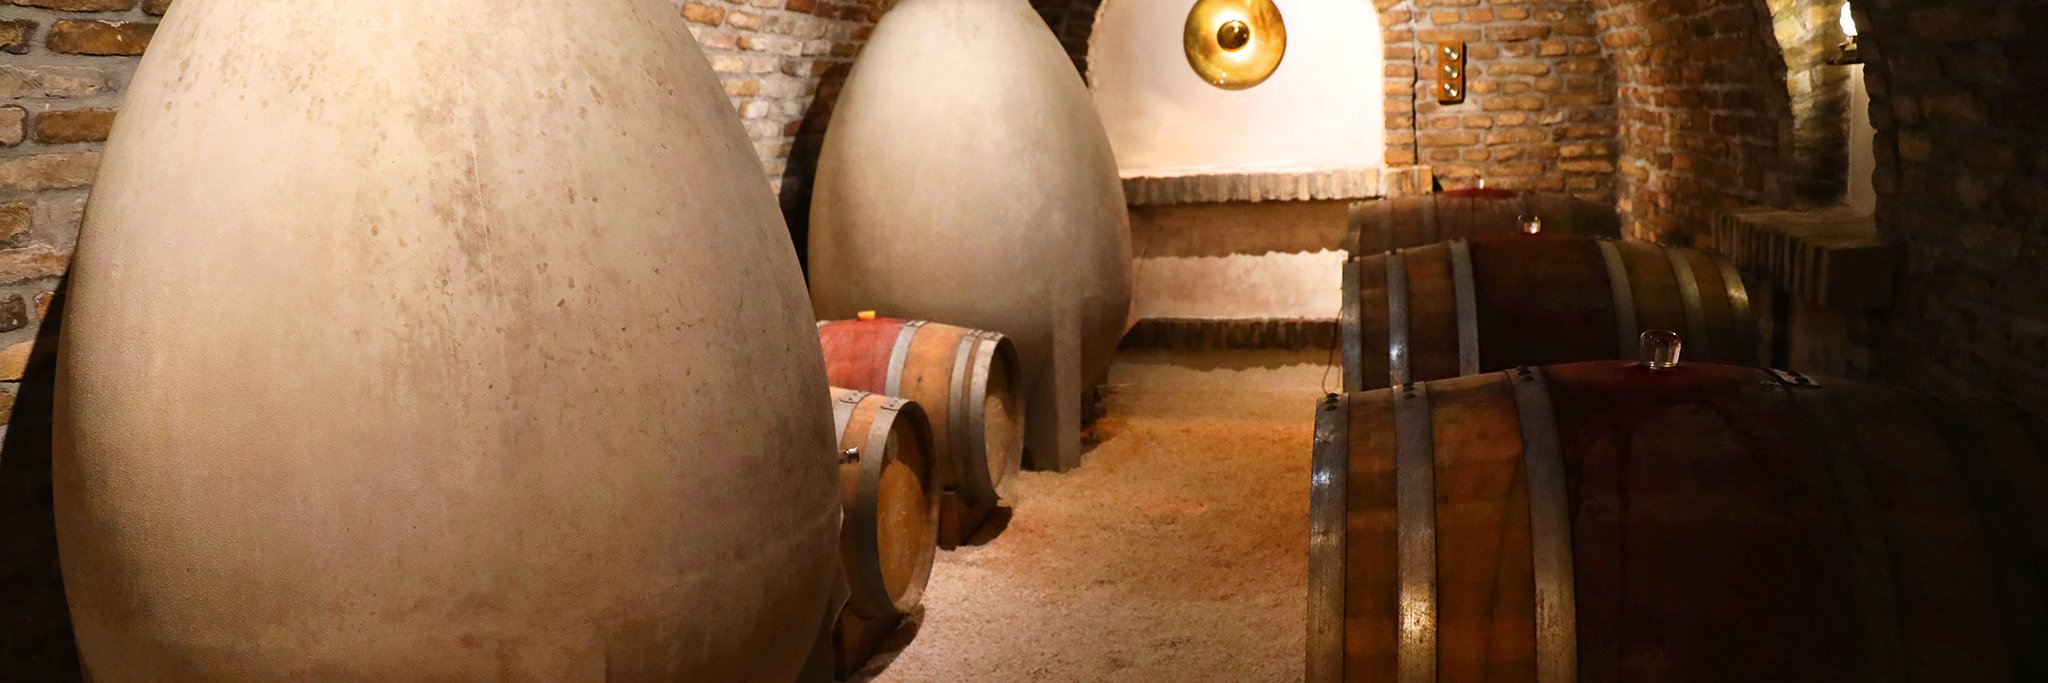 Am Weingut Petra wird mit unterschiedlichen Fasstypen und Gefäßen experimentiert.